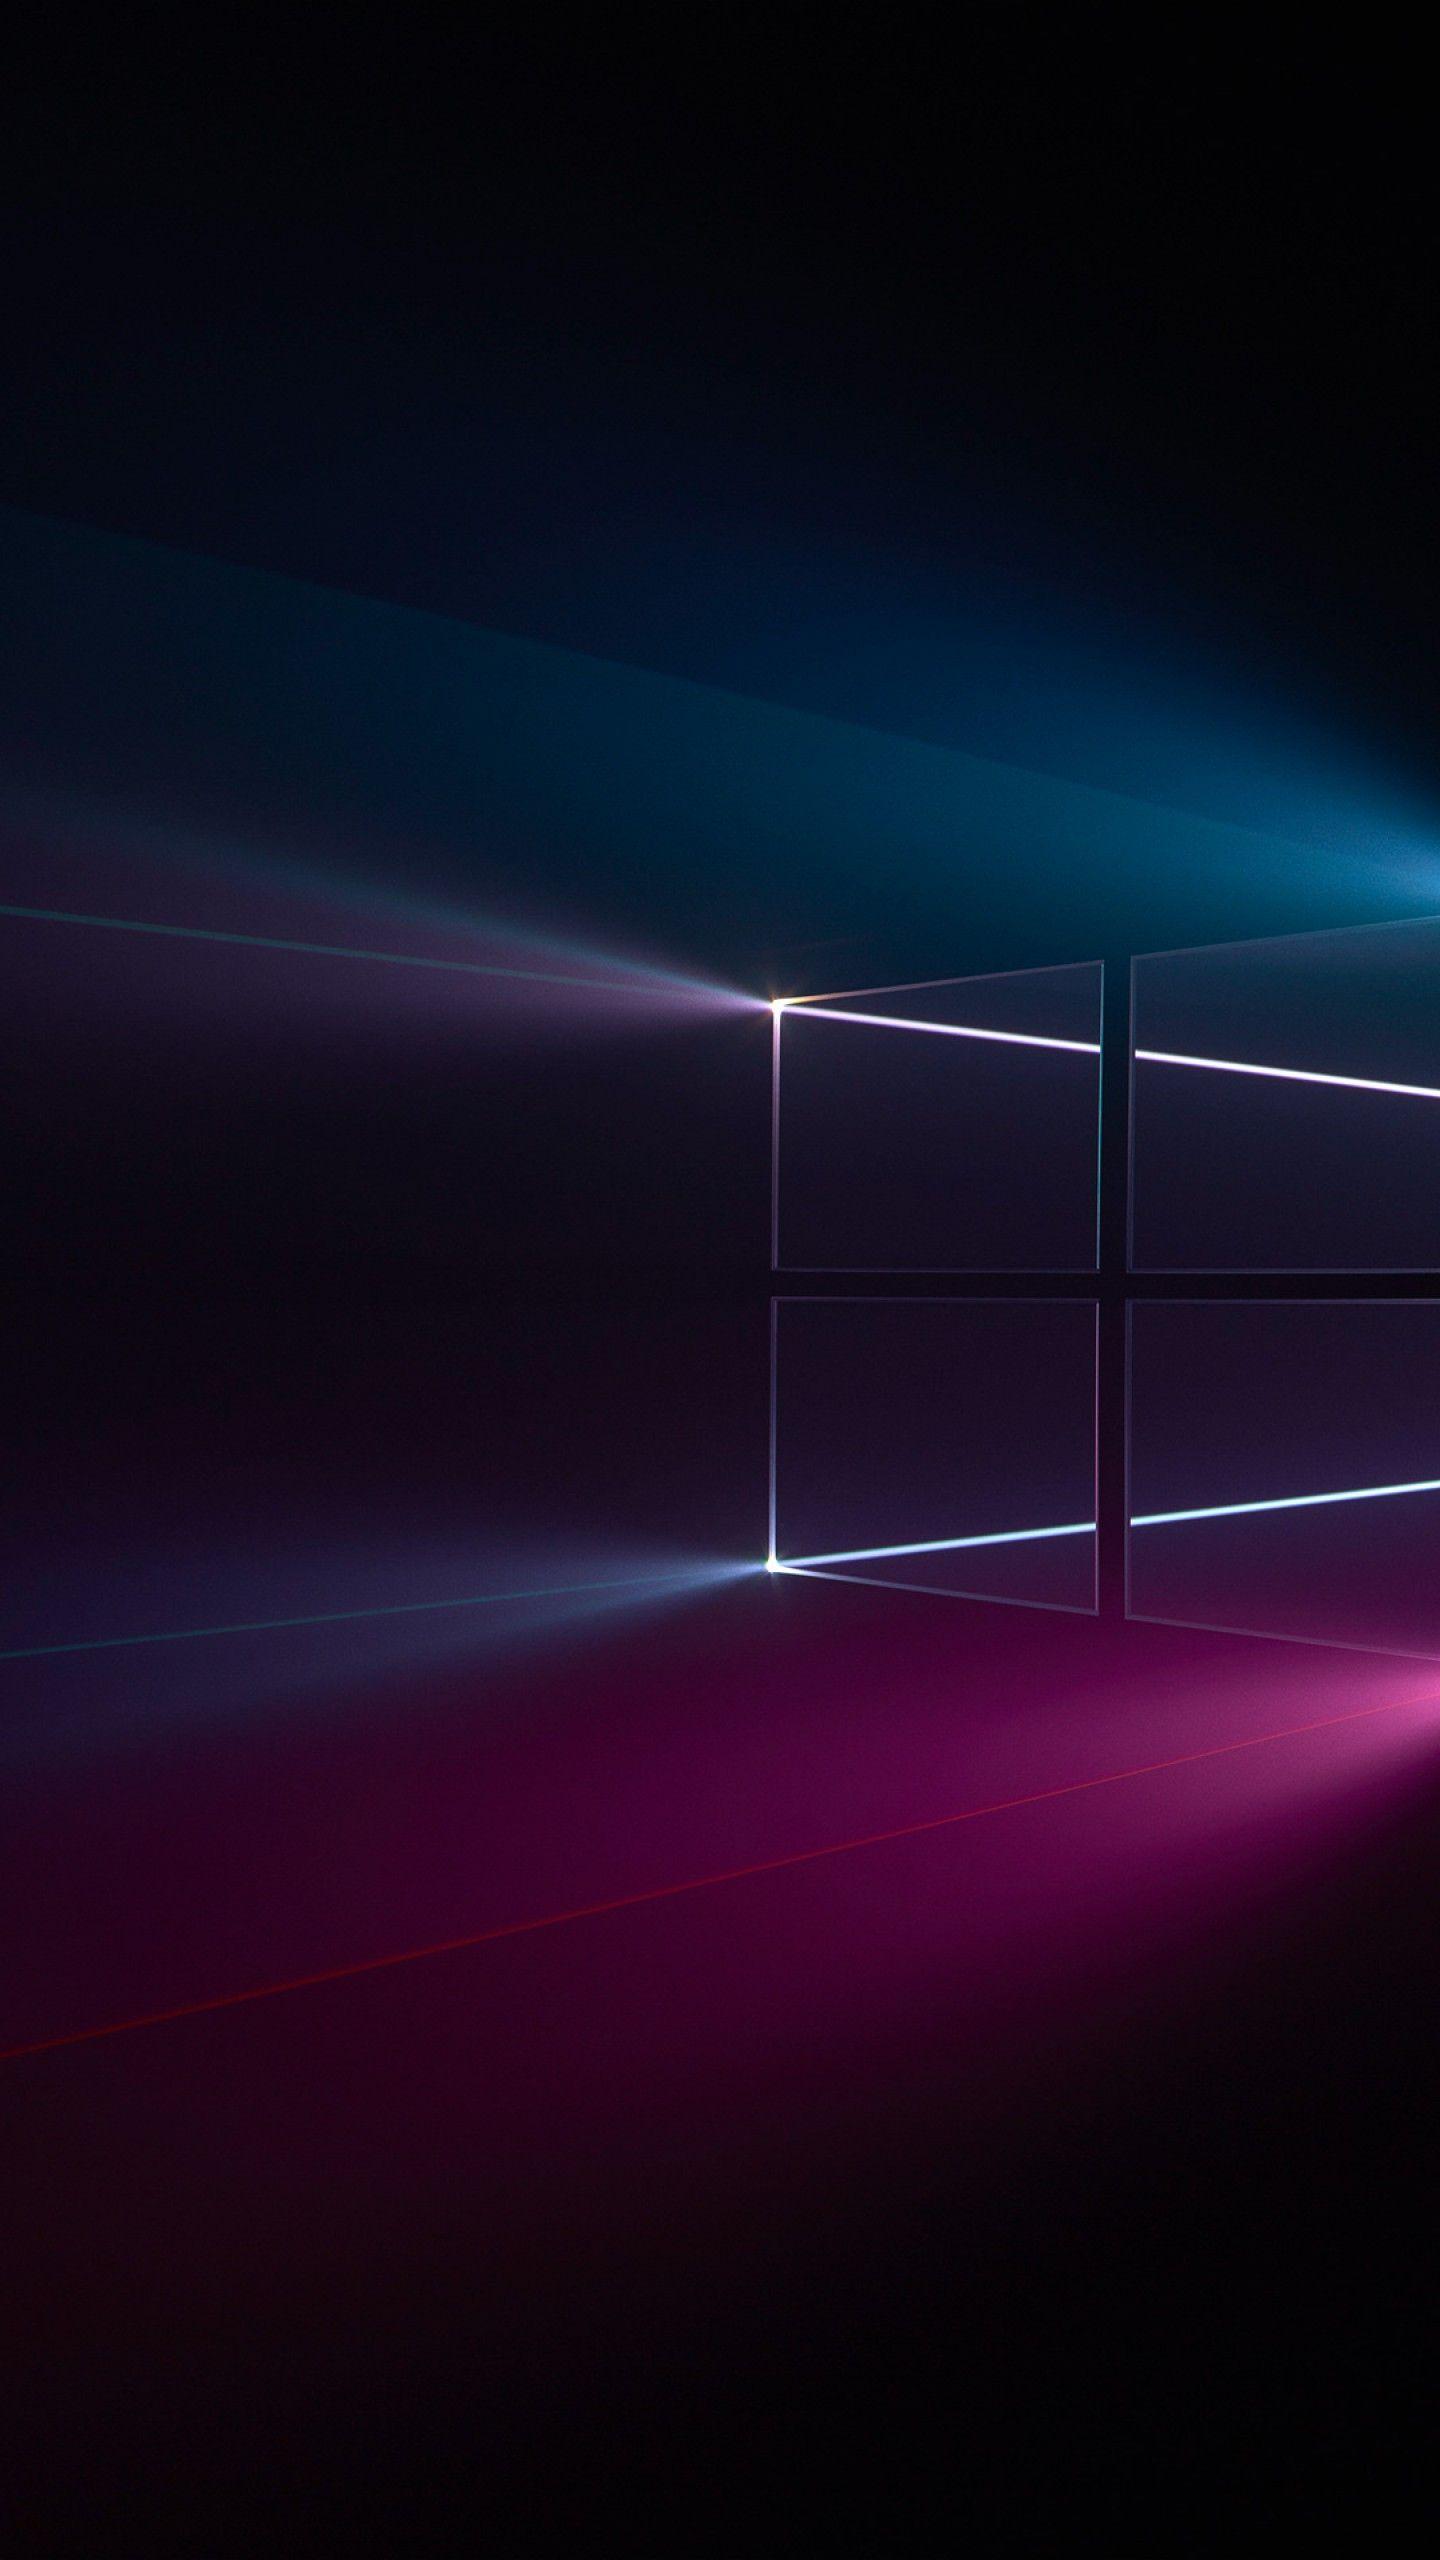 1440x2560 Hình nền Windows 10, Logo Windows, Màu xanh da trời, Hồng, Tối, độ phân giải cao